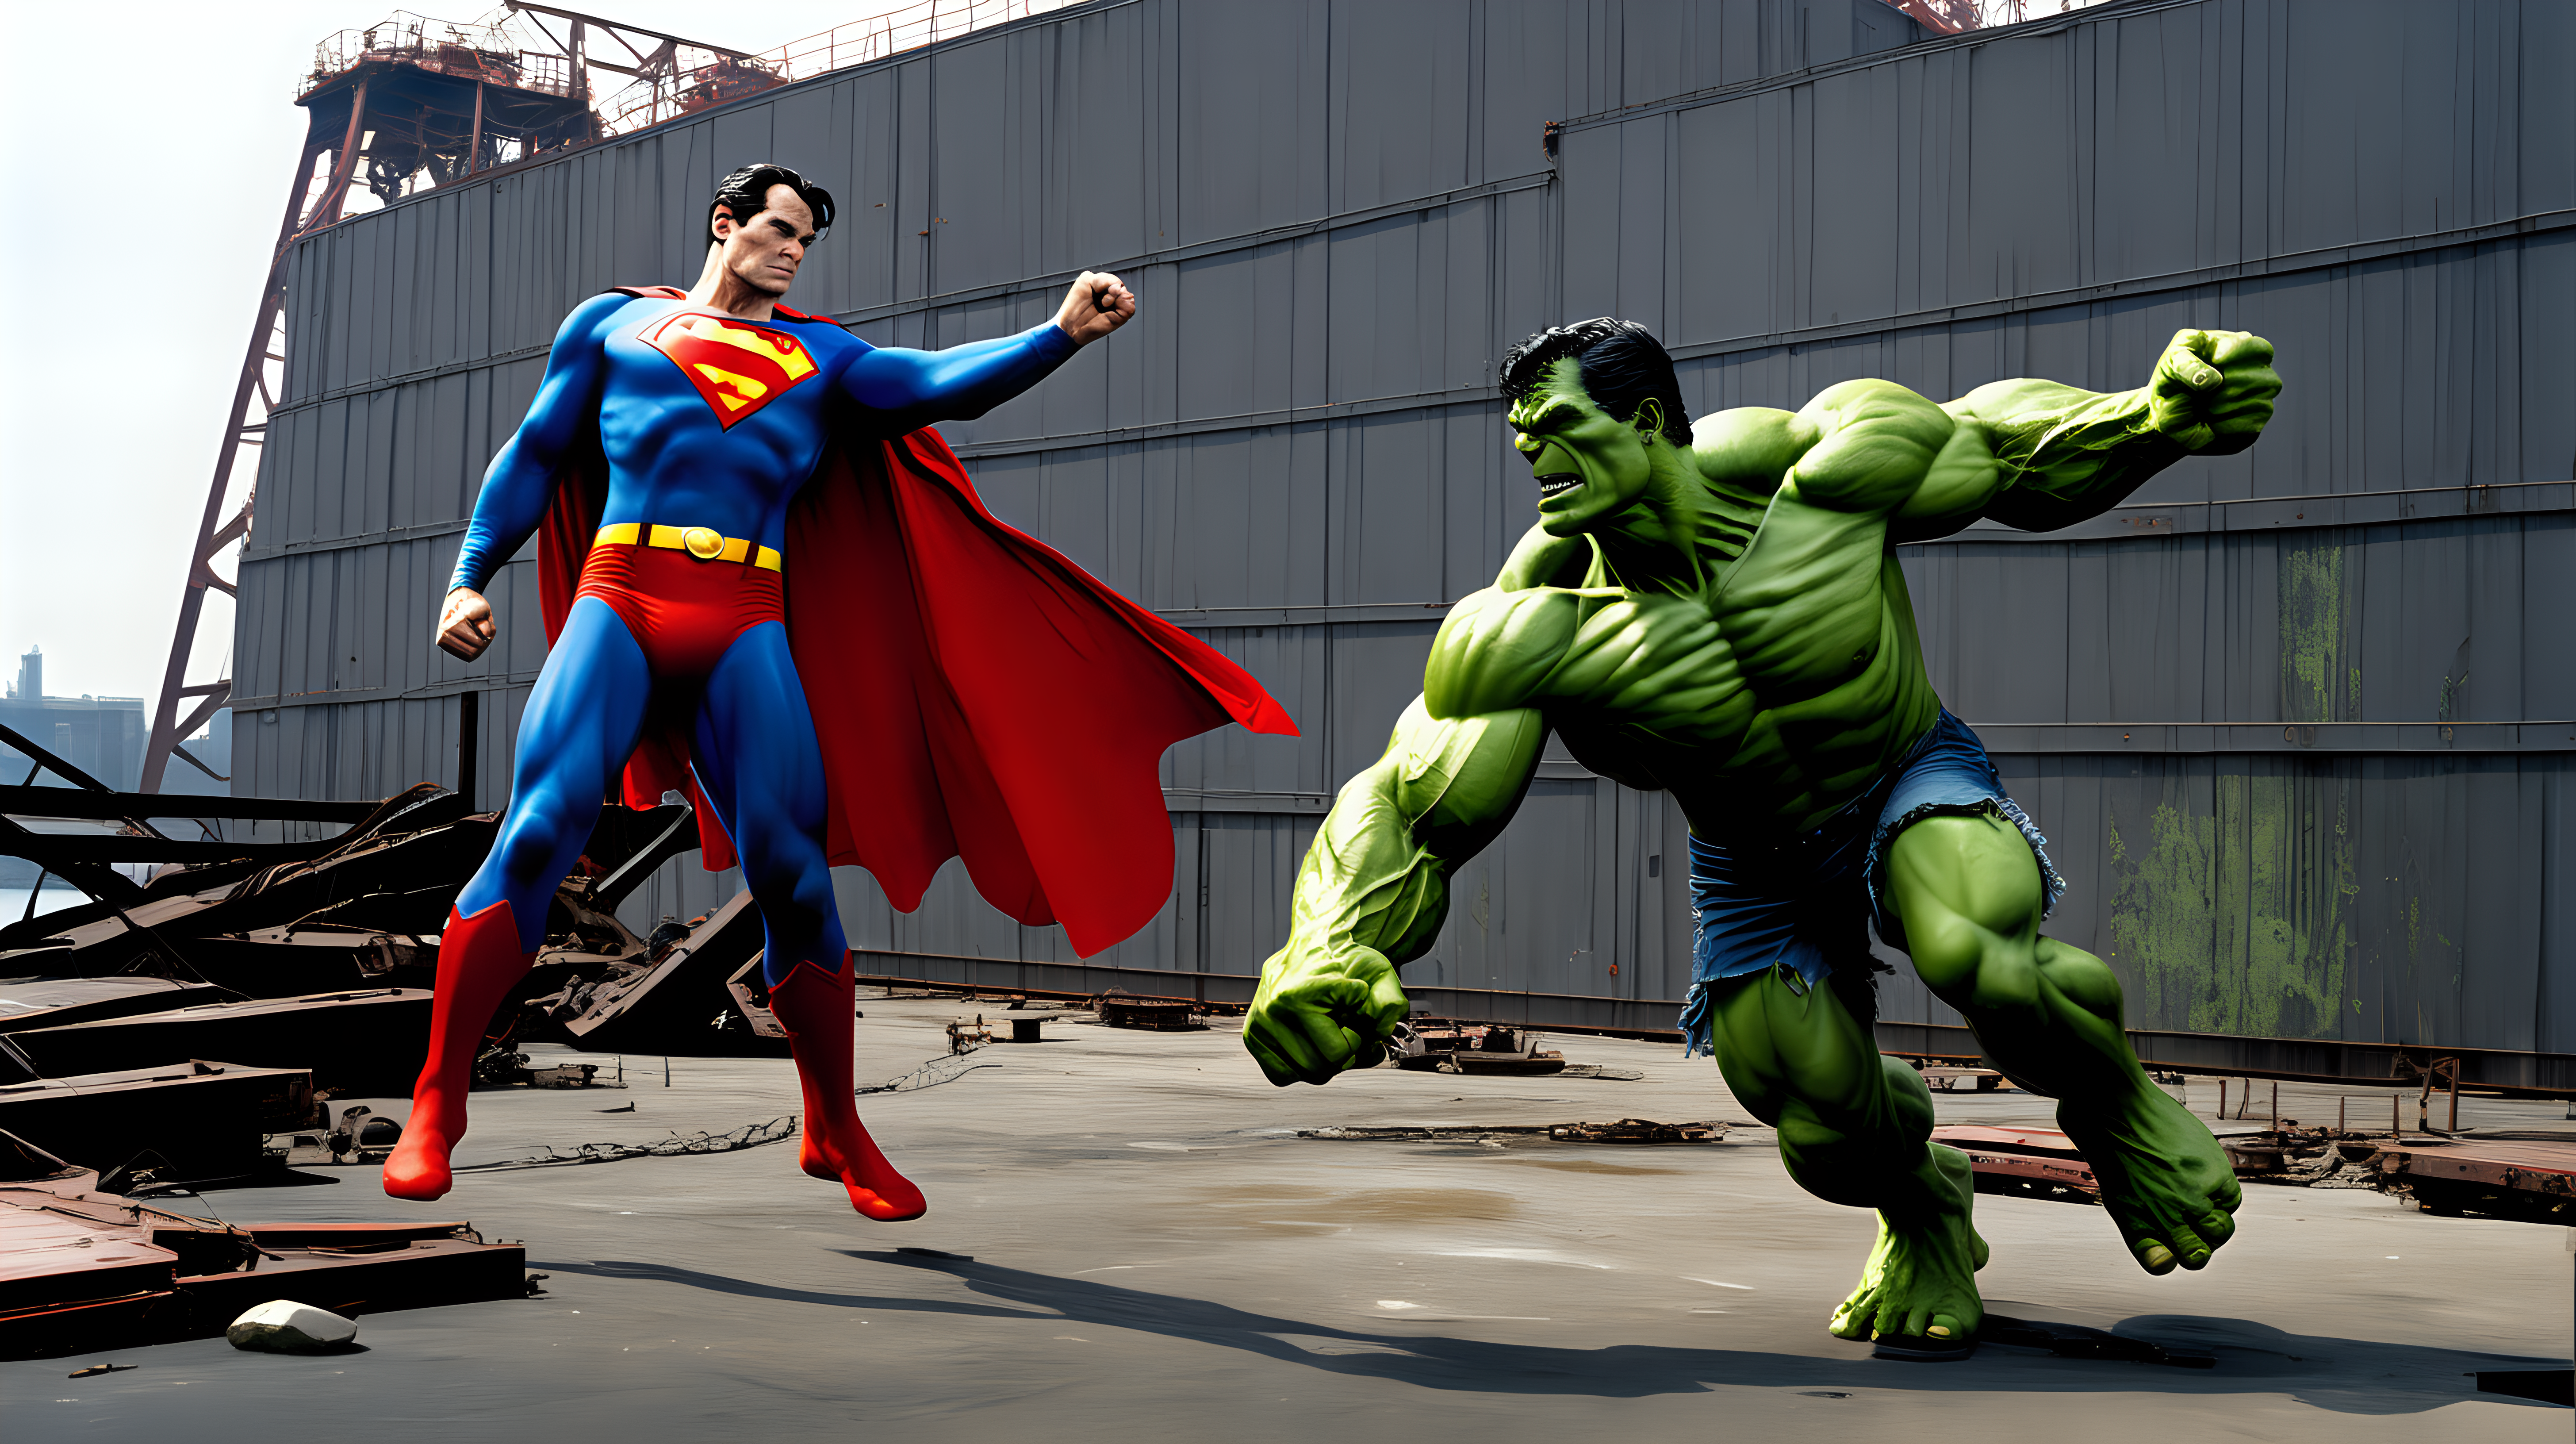 Superman fights the hulk in an abandon shipyard